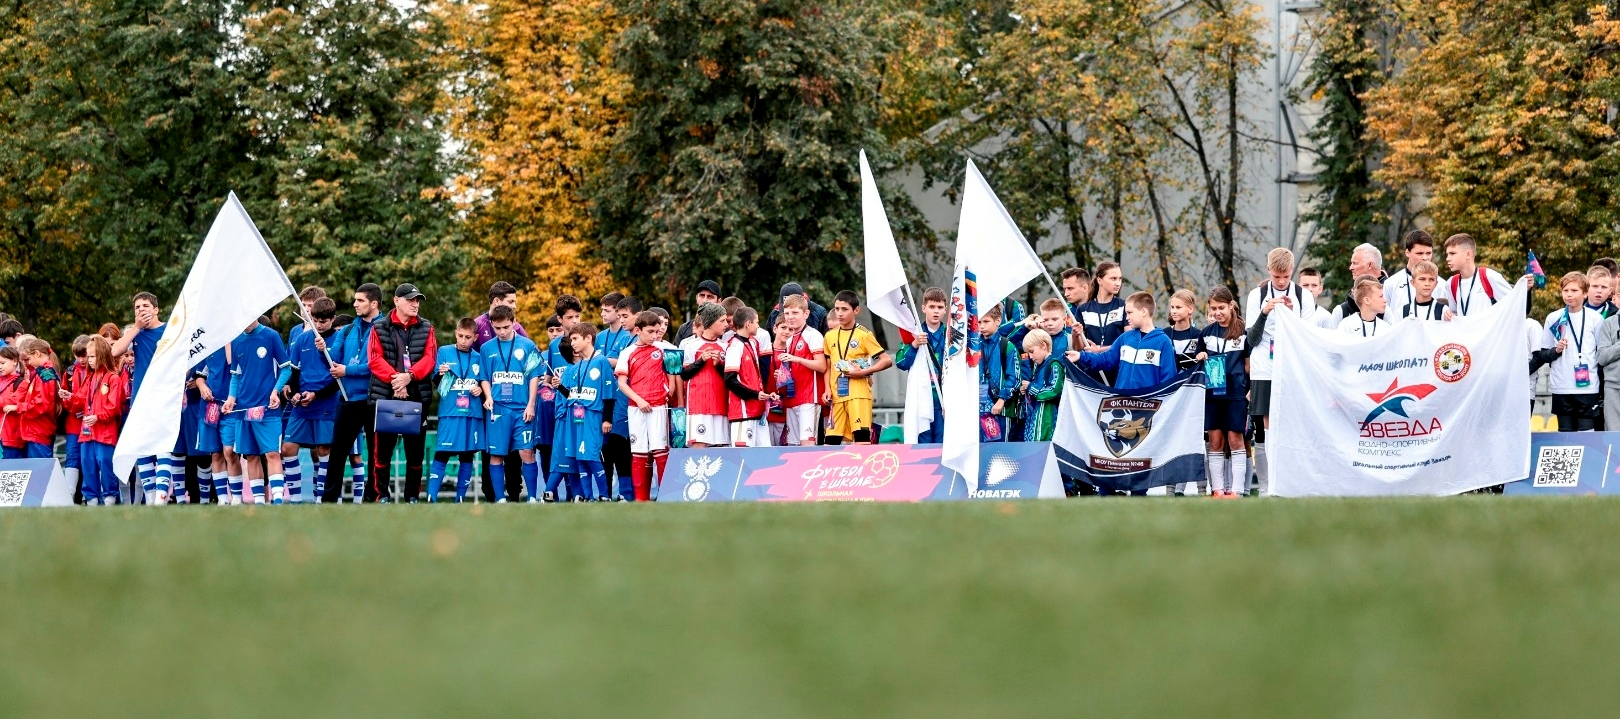 Всероссийская Школьная футбольная лига РФС стартовала в Москве